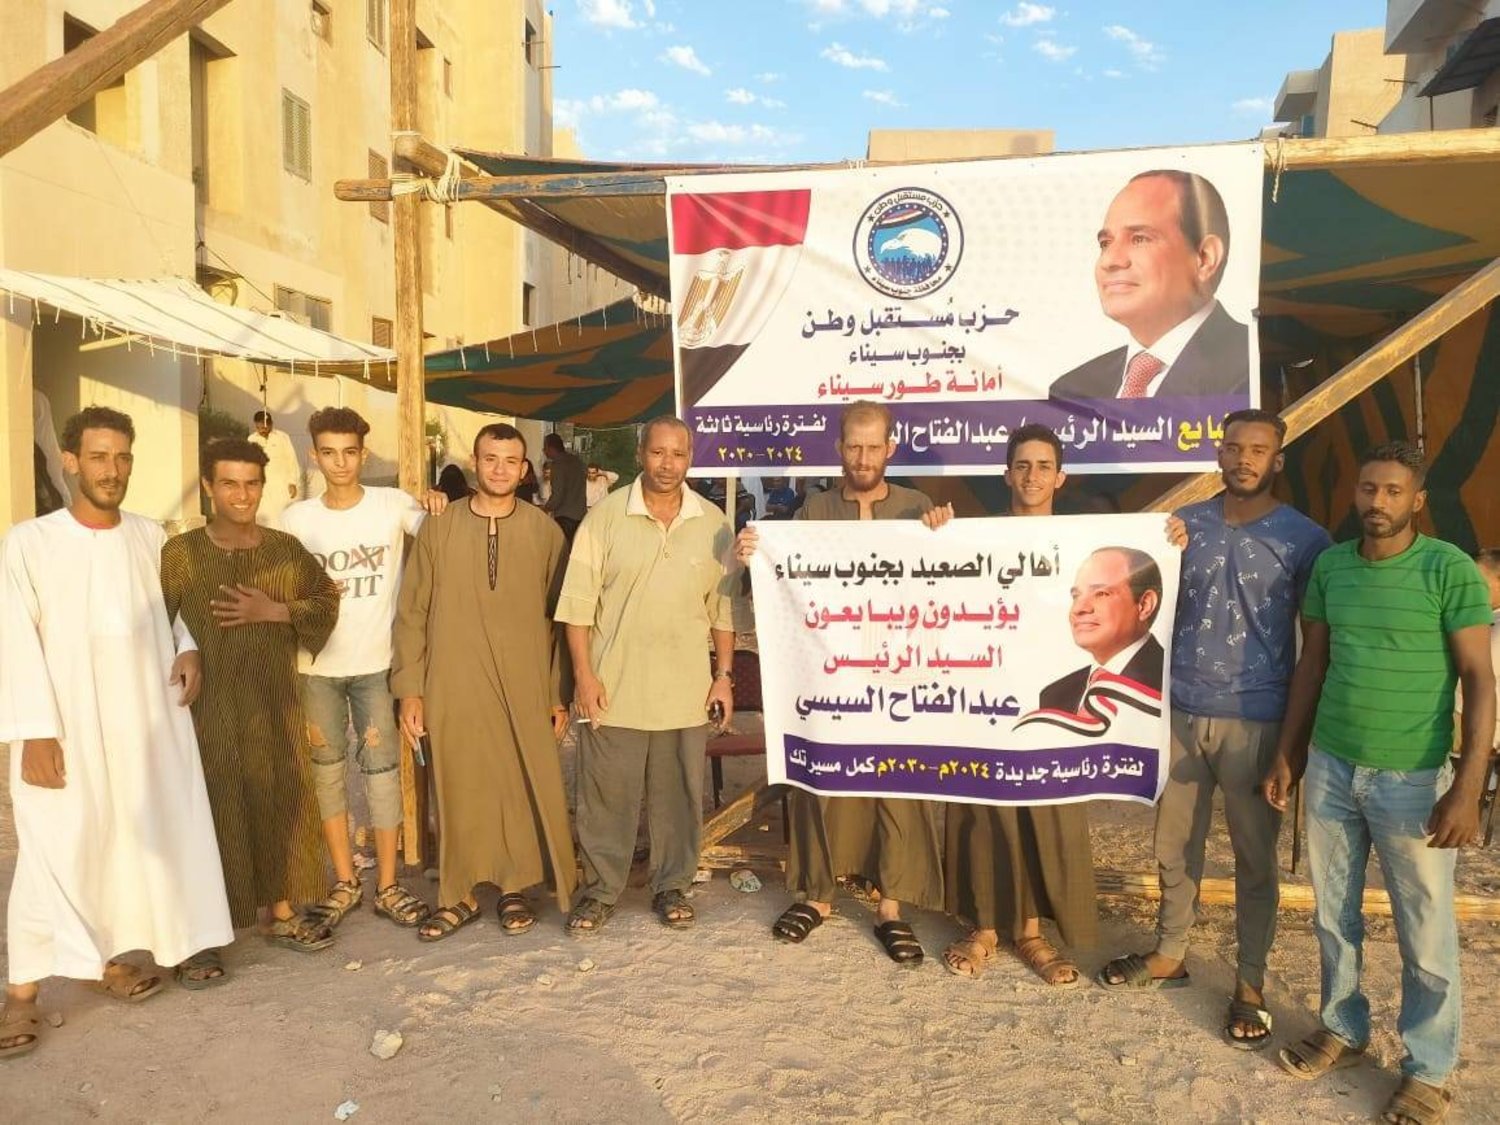 مواطنون يوثقون توكيلات لتأييد ترشح الرئيس الحالي عبد الفتاح السيسي (حزب مستقبل وطن)